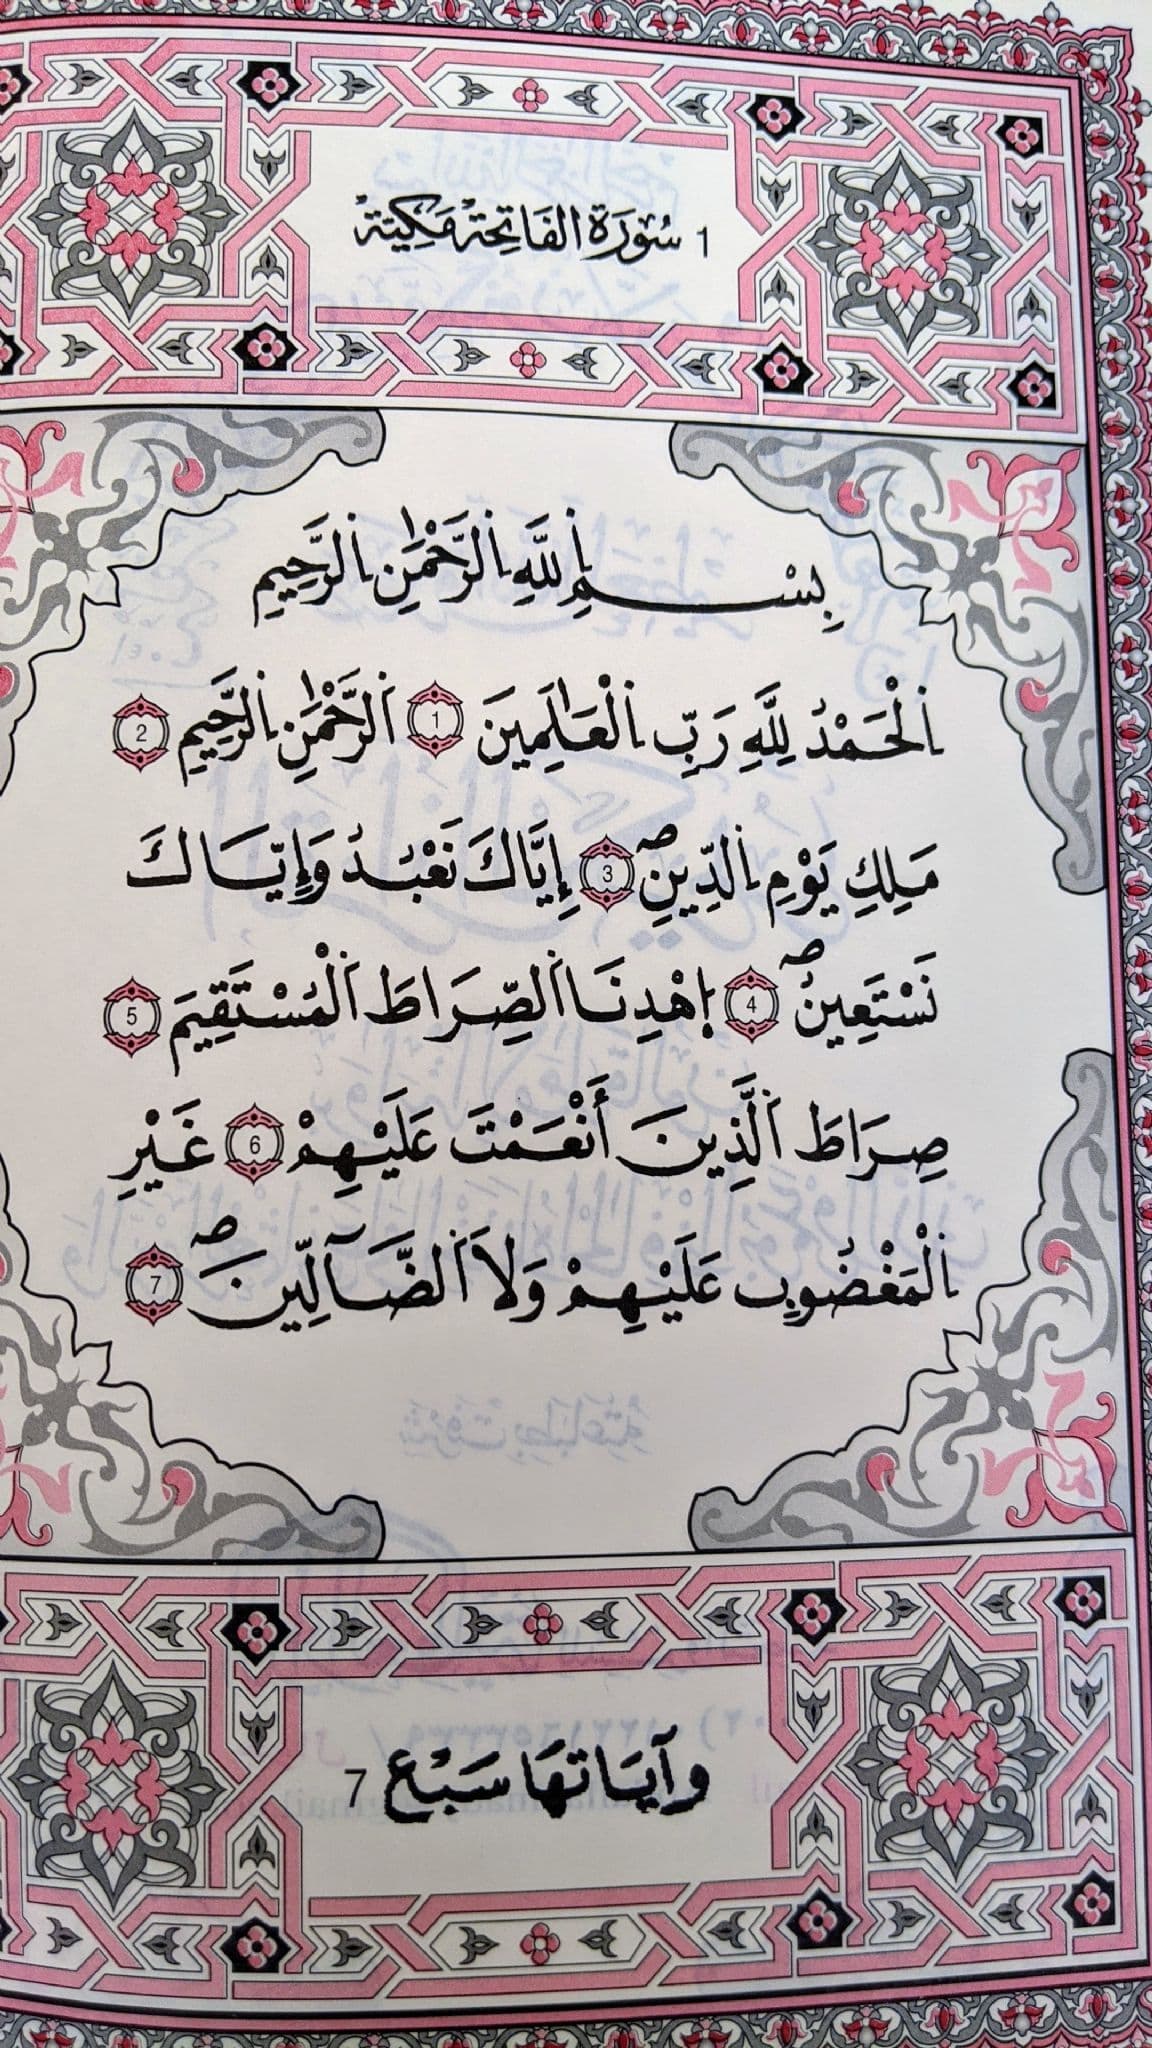 القرآن الكريم - برواية قالون والرسم العثماني على ما اختاره الحافظ أبوعمرو الداني